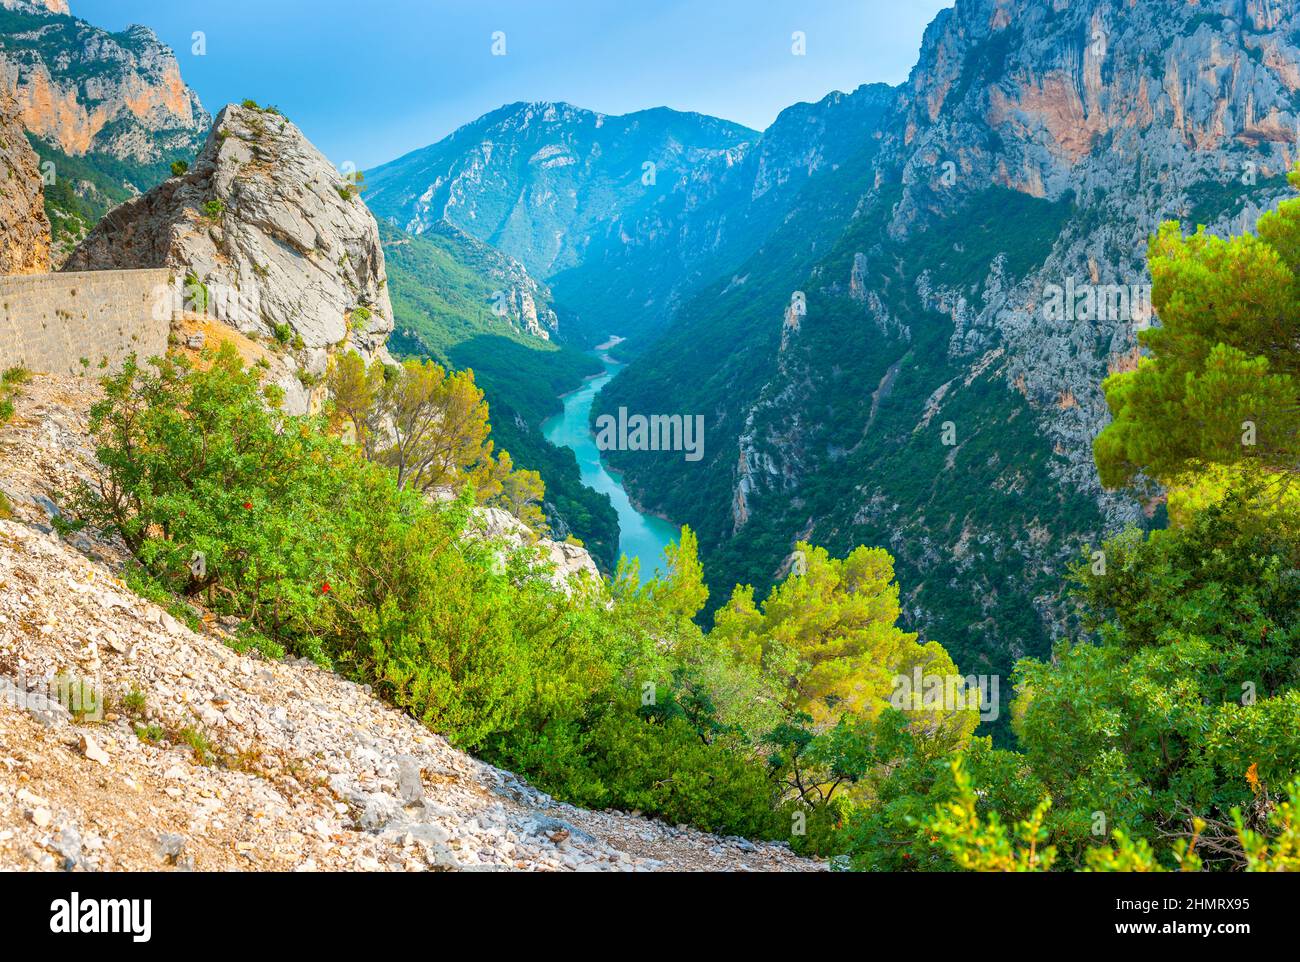 Francia Provenza, Verdon Gorge nelle Alpi francesi. Fiume turchese che scorre lungo il fondo del canyon Foto Stock